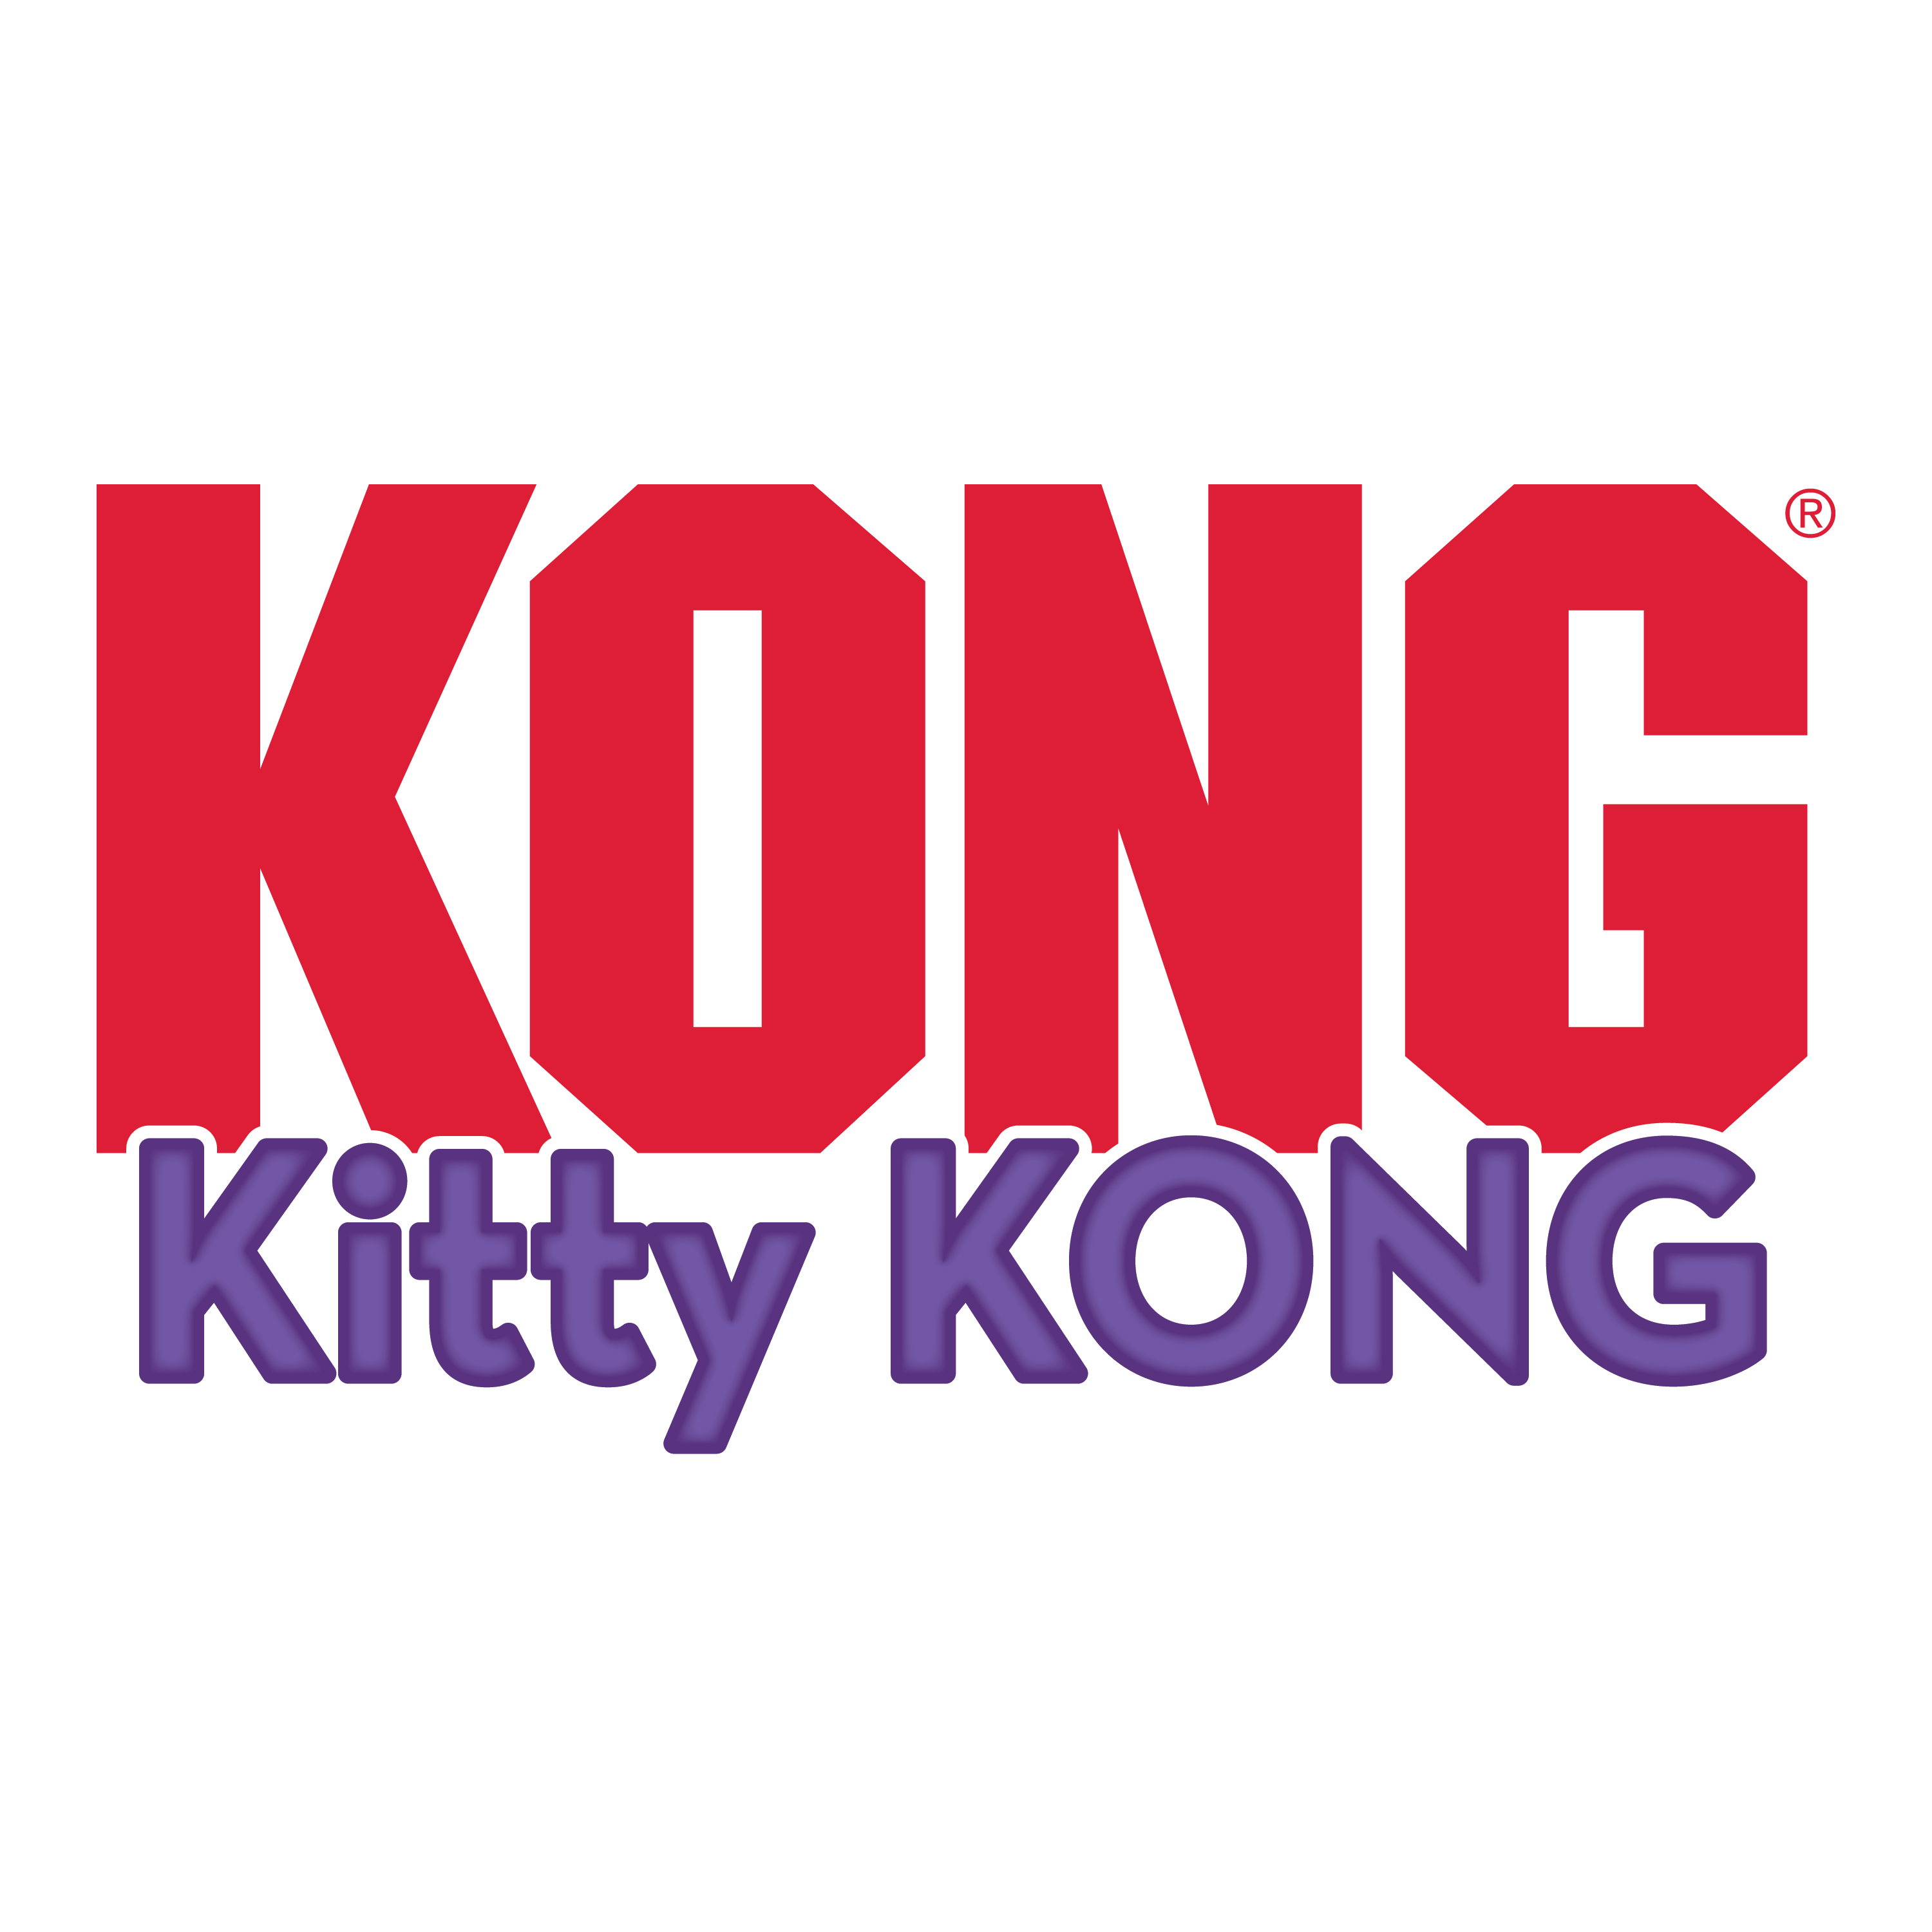 Kitty KONG alt1 immagine del prodotto